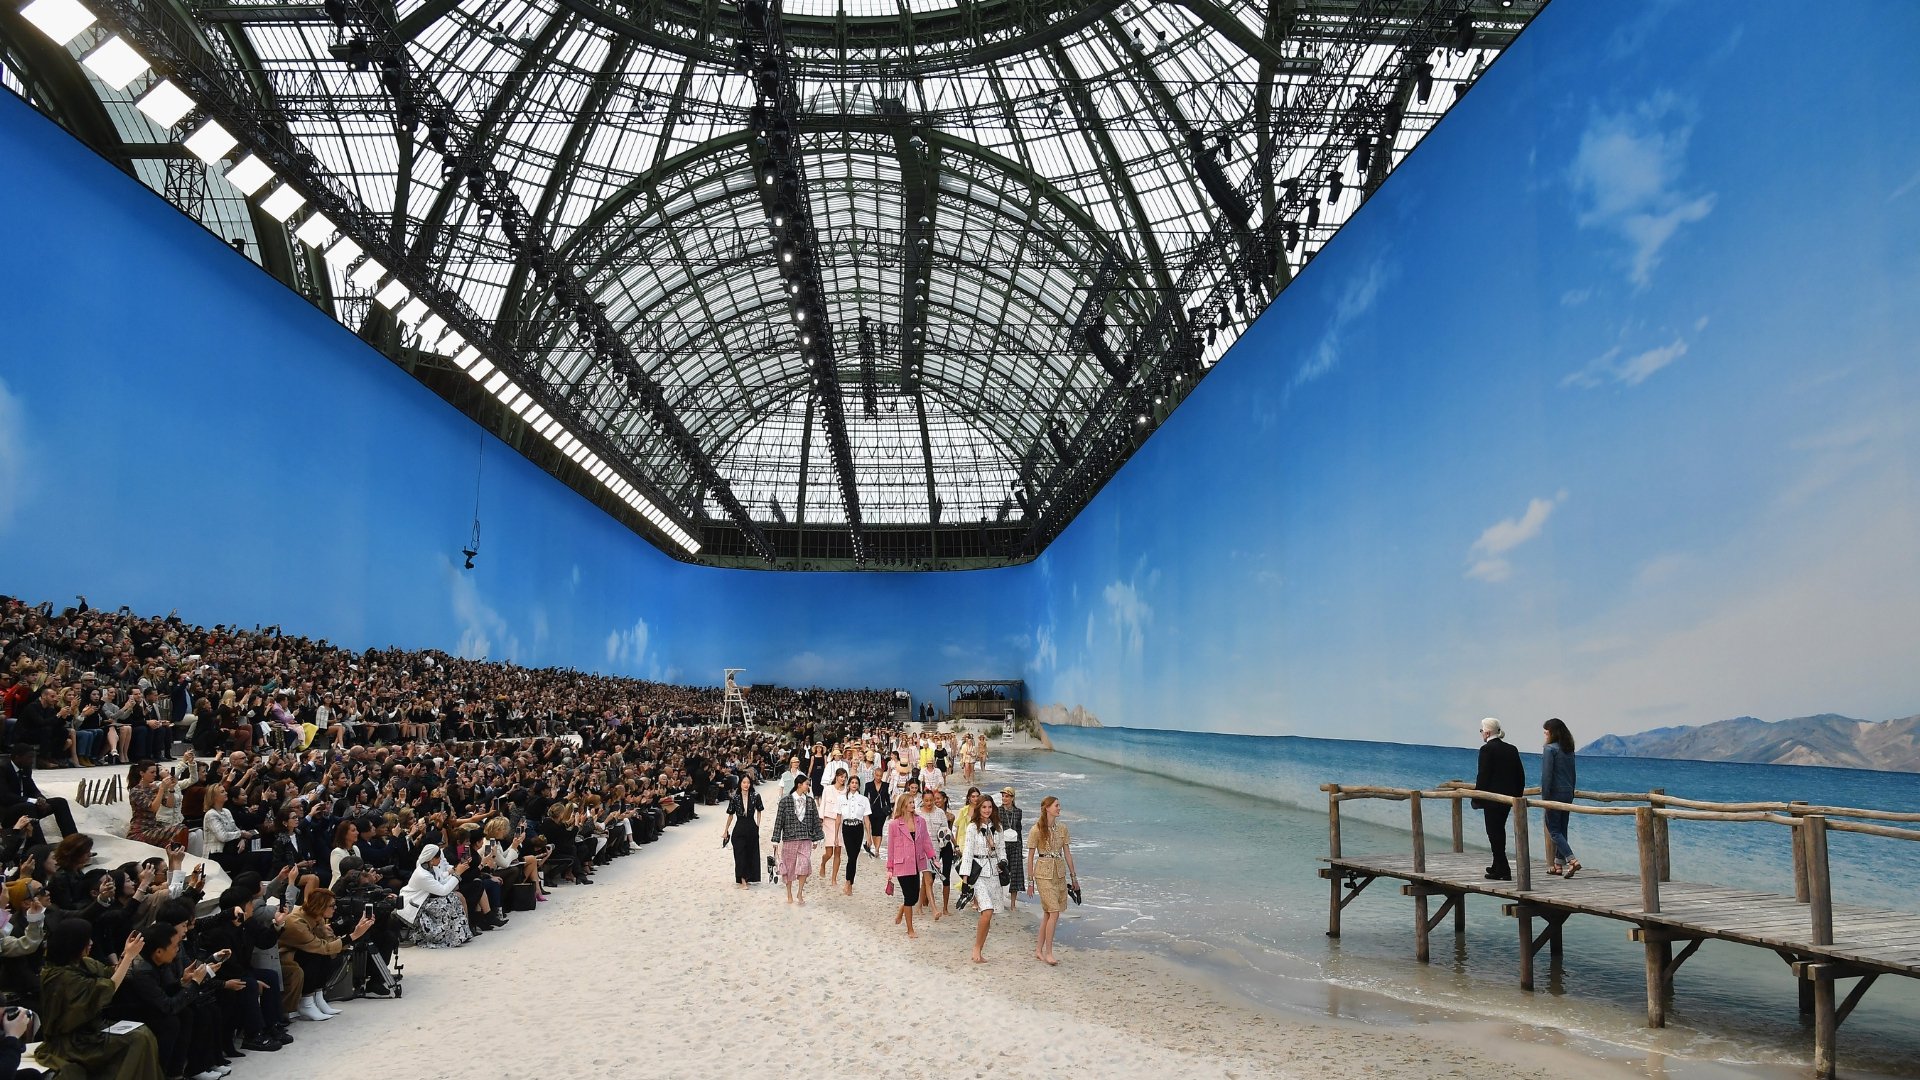 Le Grand Into A Beach For Chanel Show – WindowsWear